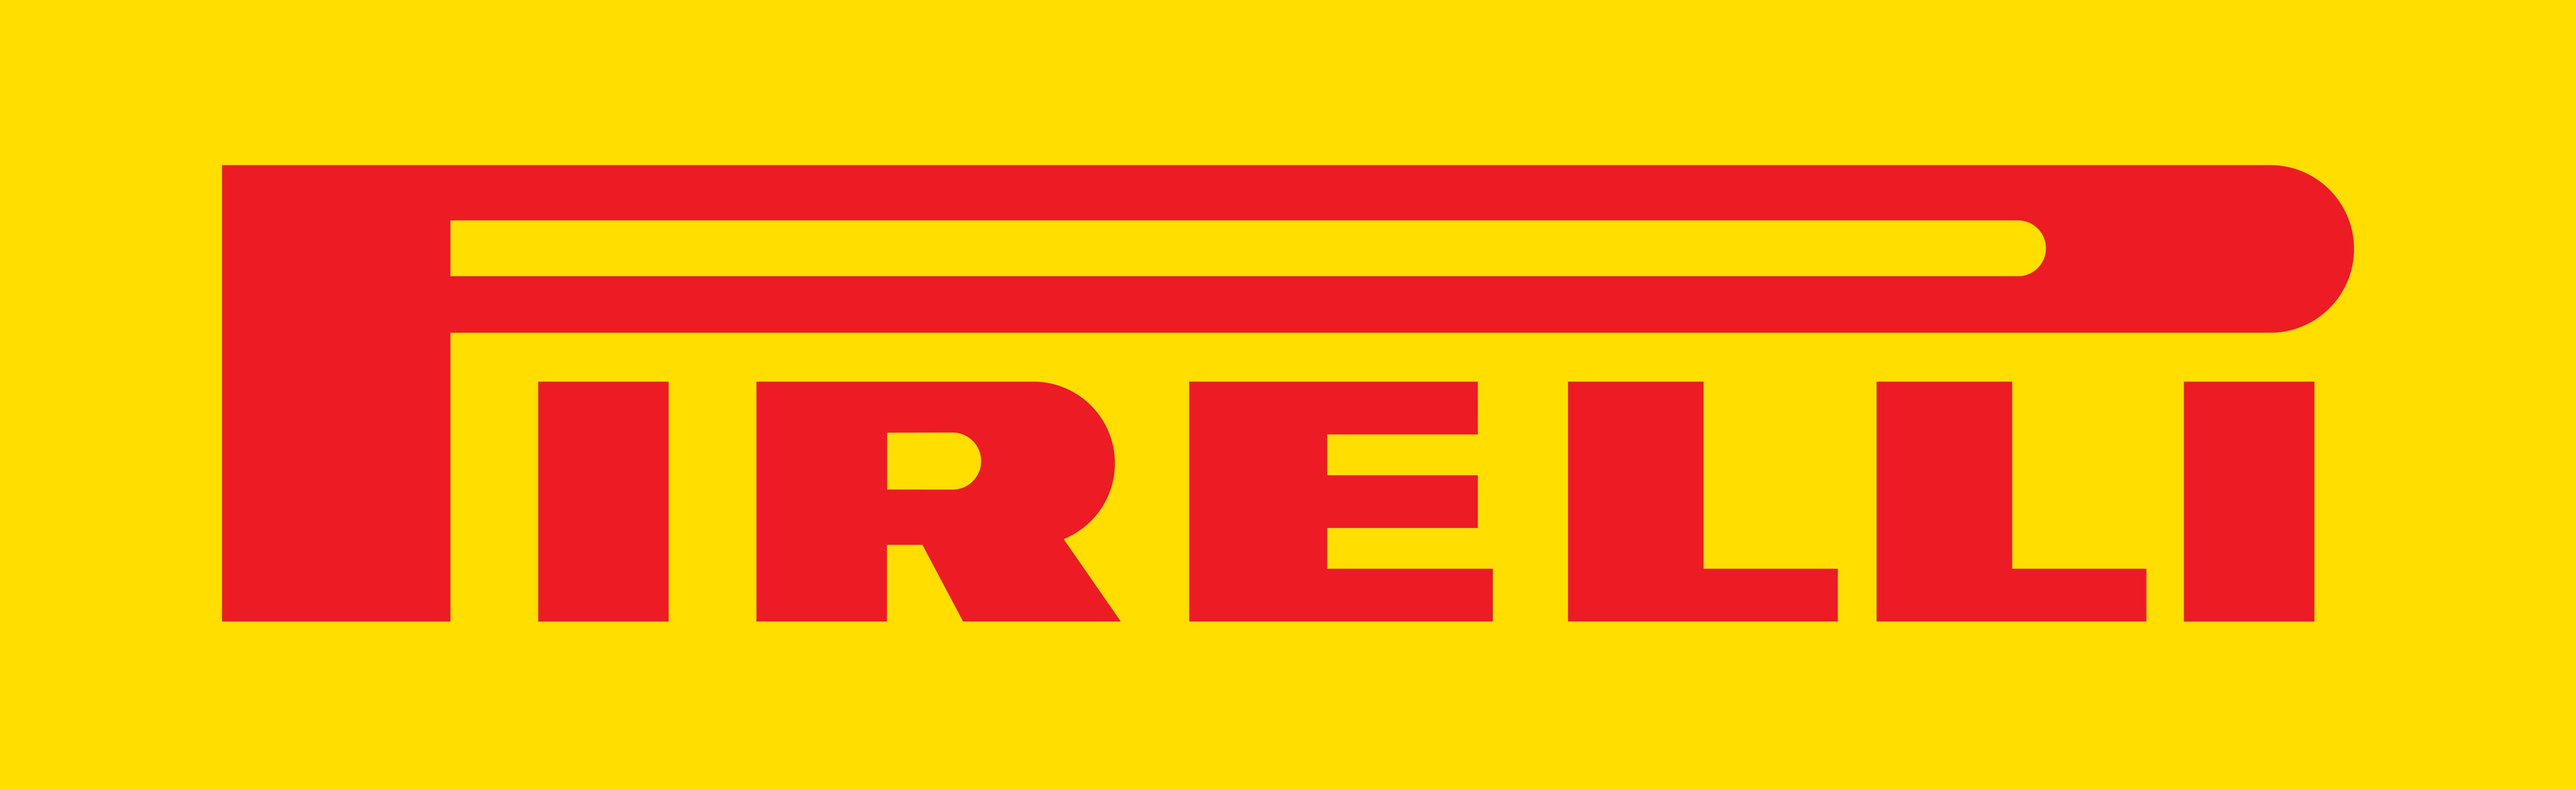 pirelli tyre logo